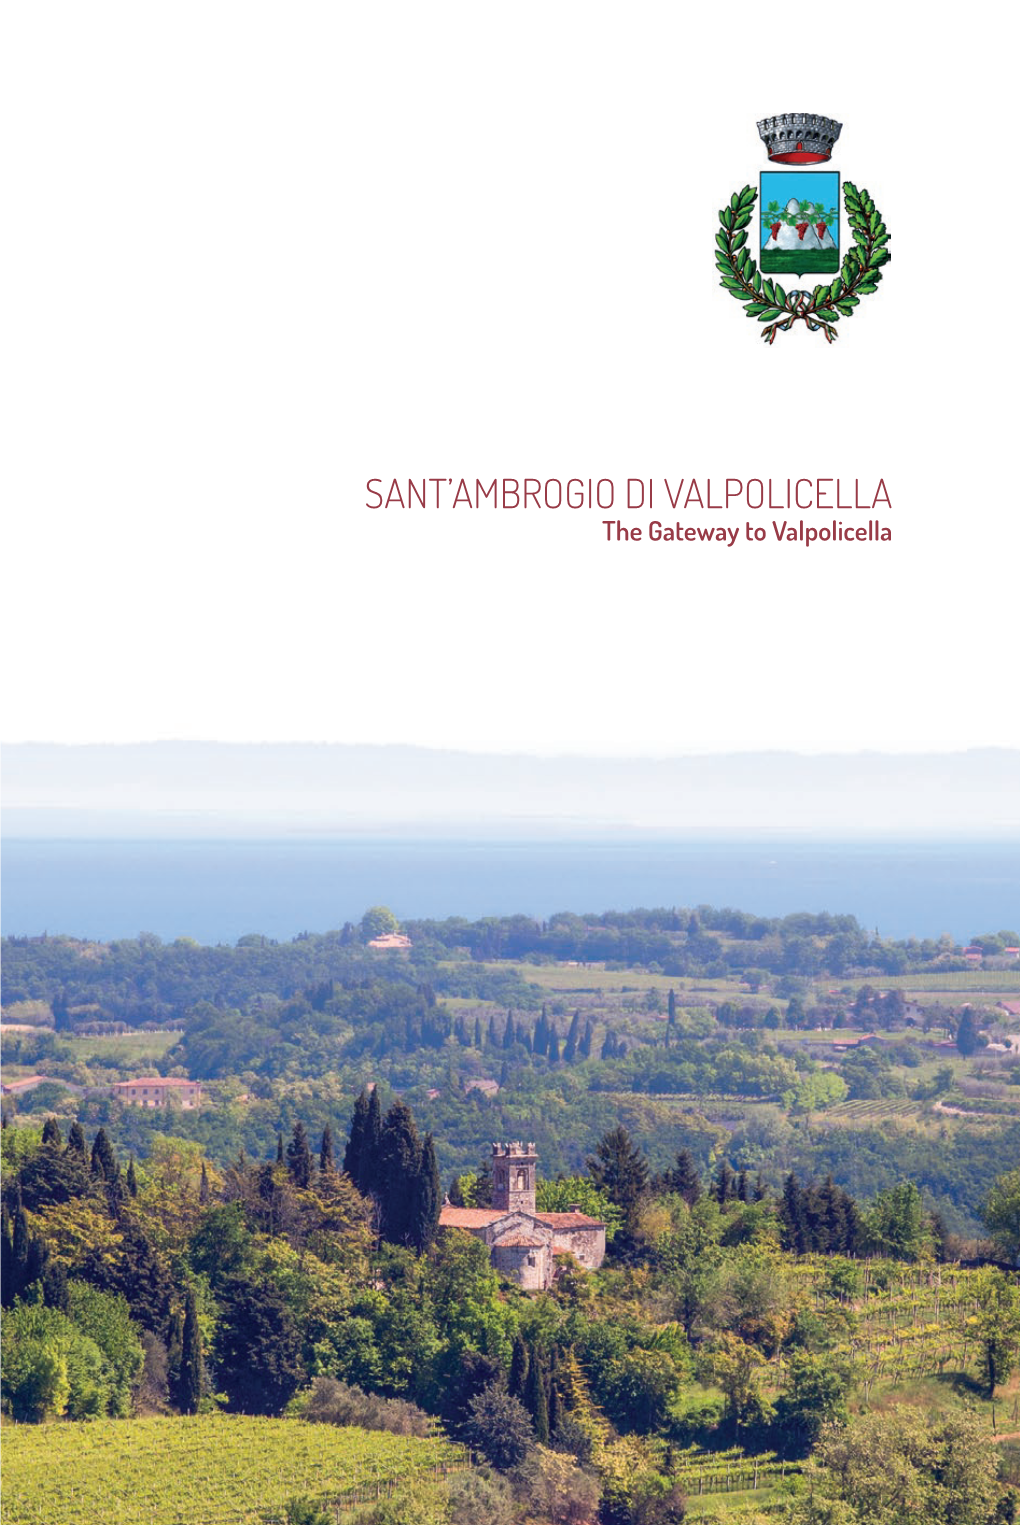 Sant'ambrogio Di Valpolicella Verona - IT Tel +39 045 6832611 Fax +39 045 6860592 Segreteria@Comune.Santambrogio.Vr.It